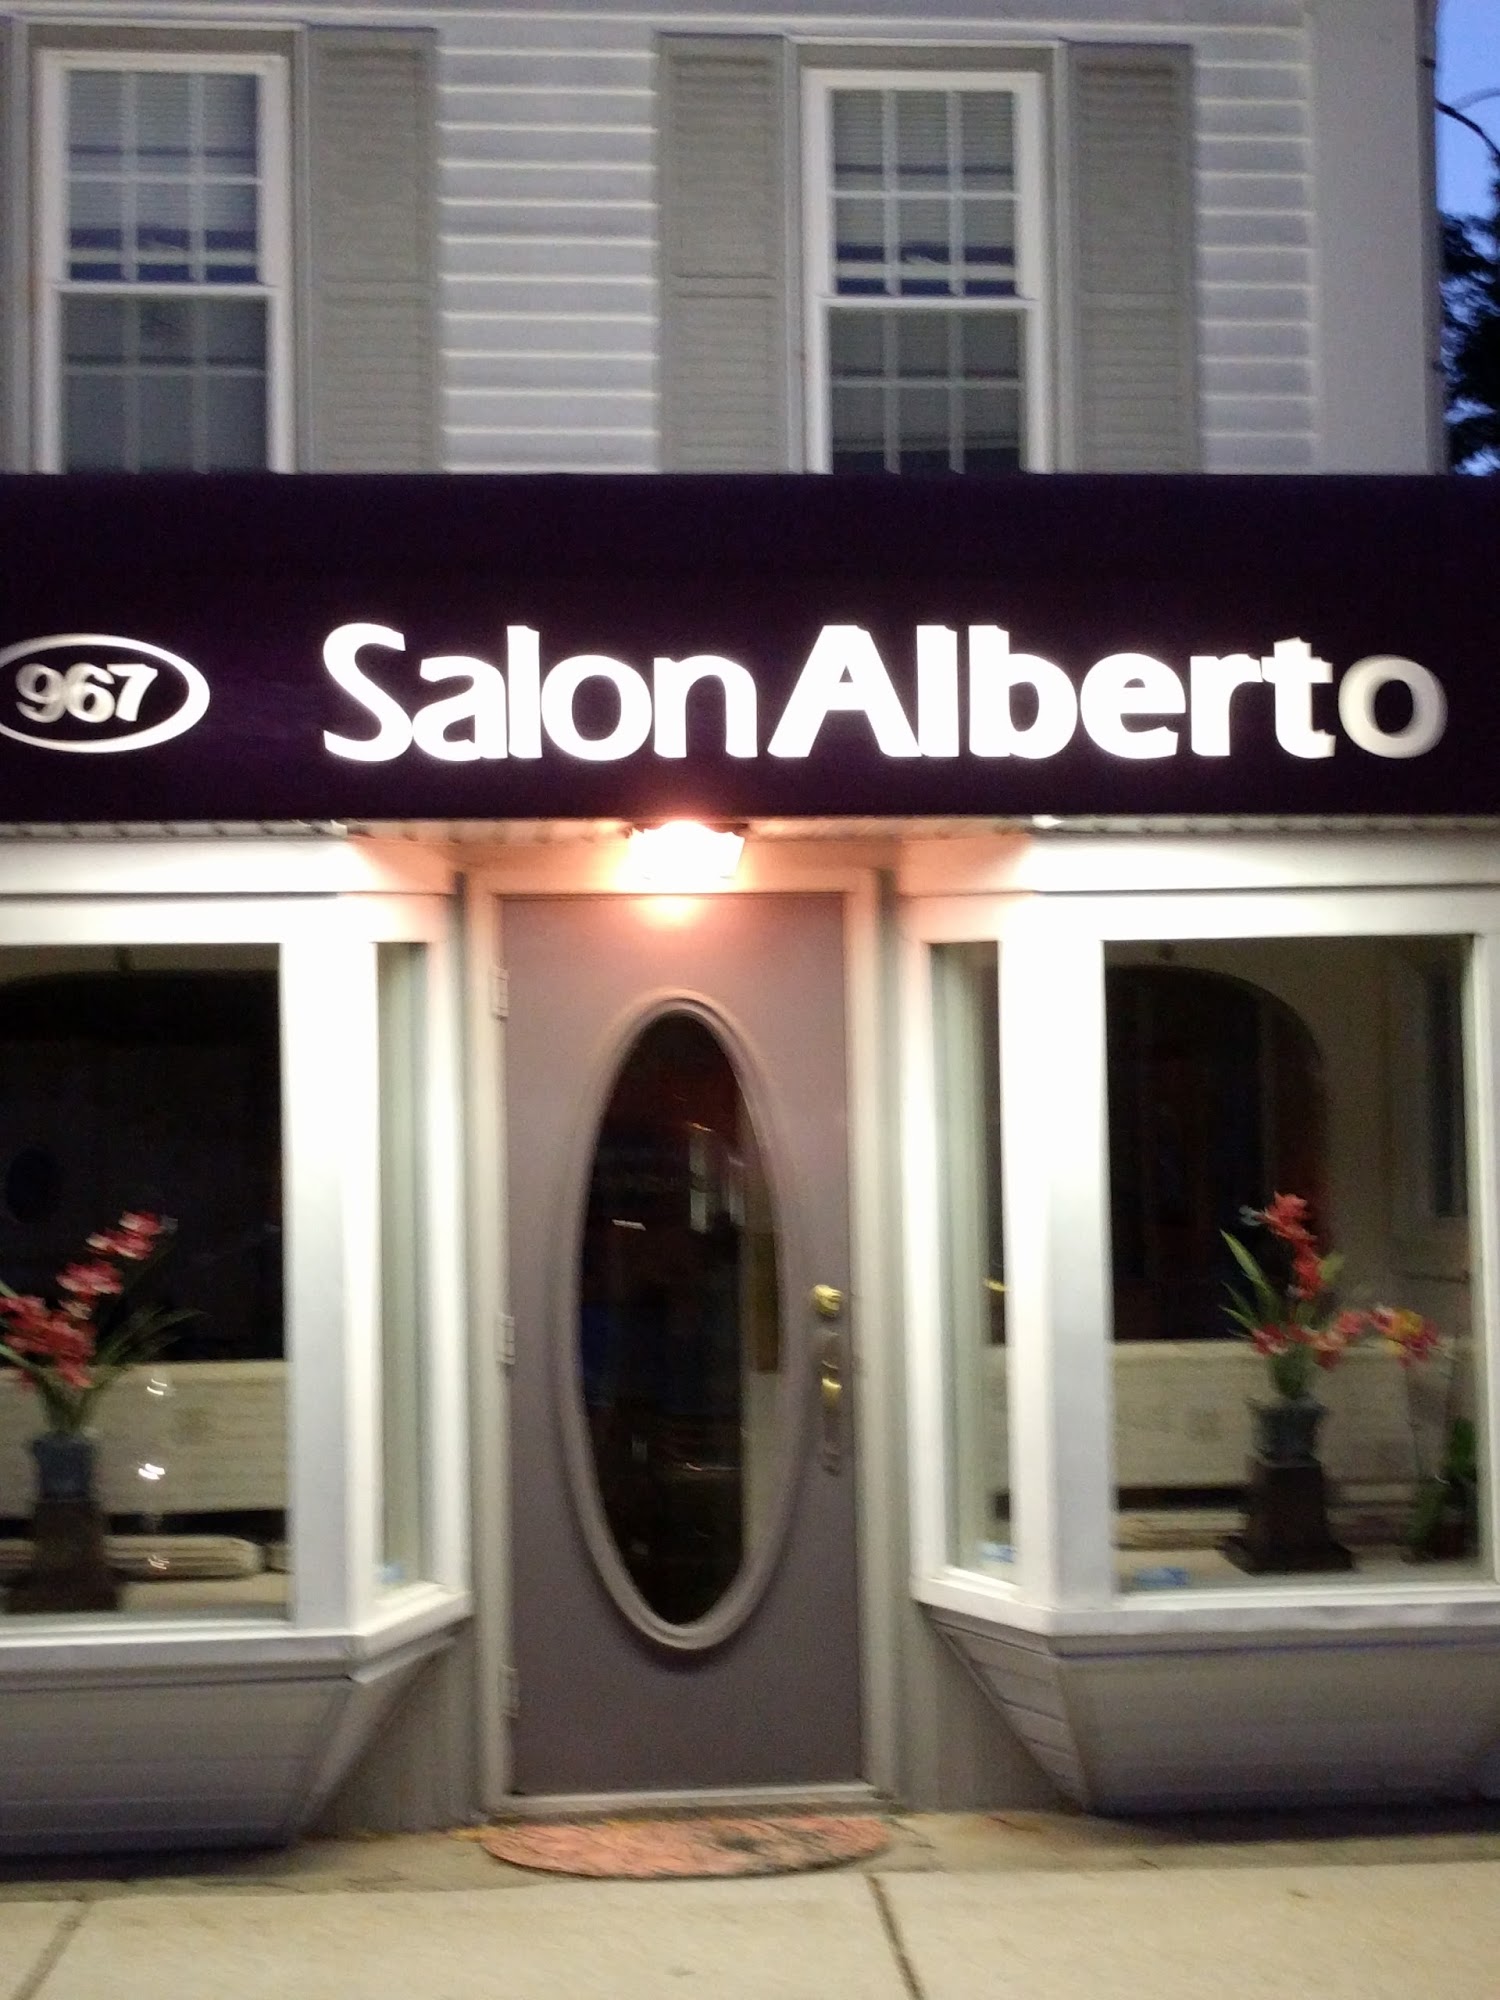 Salon Alberto